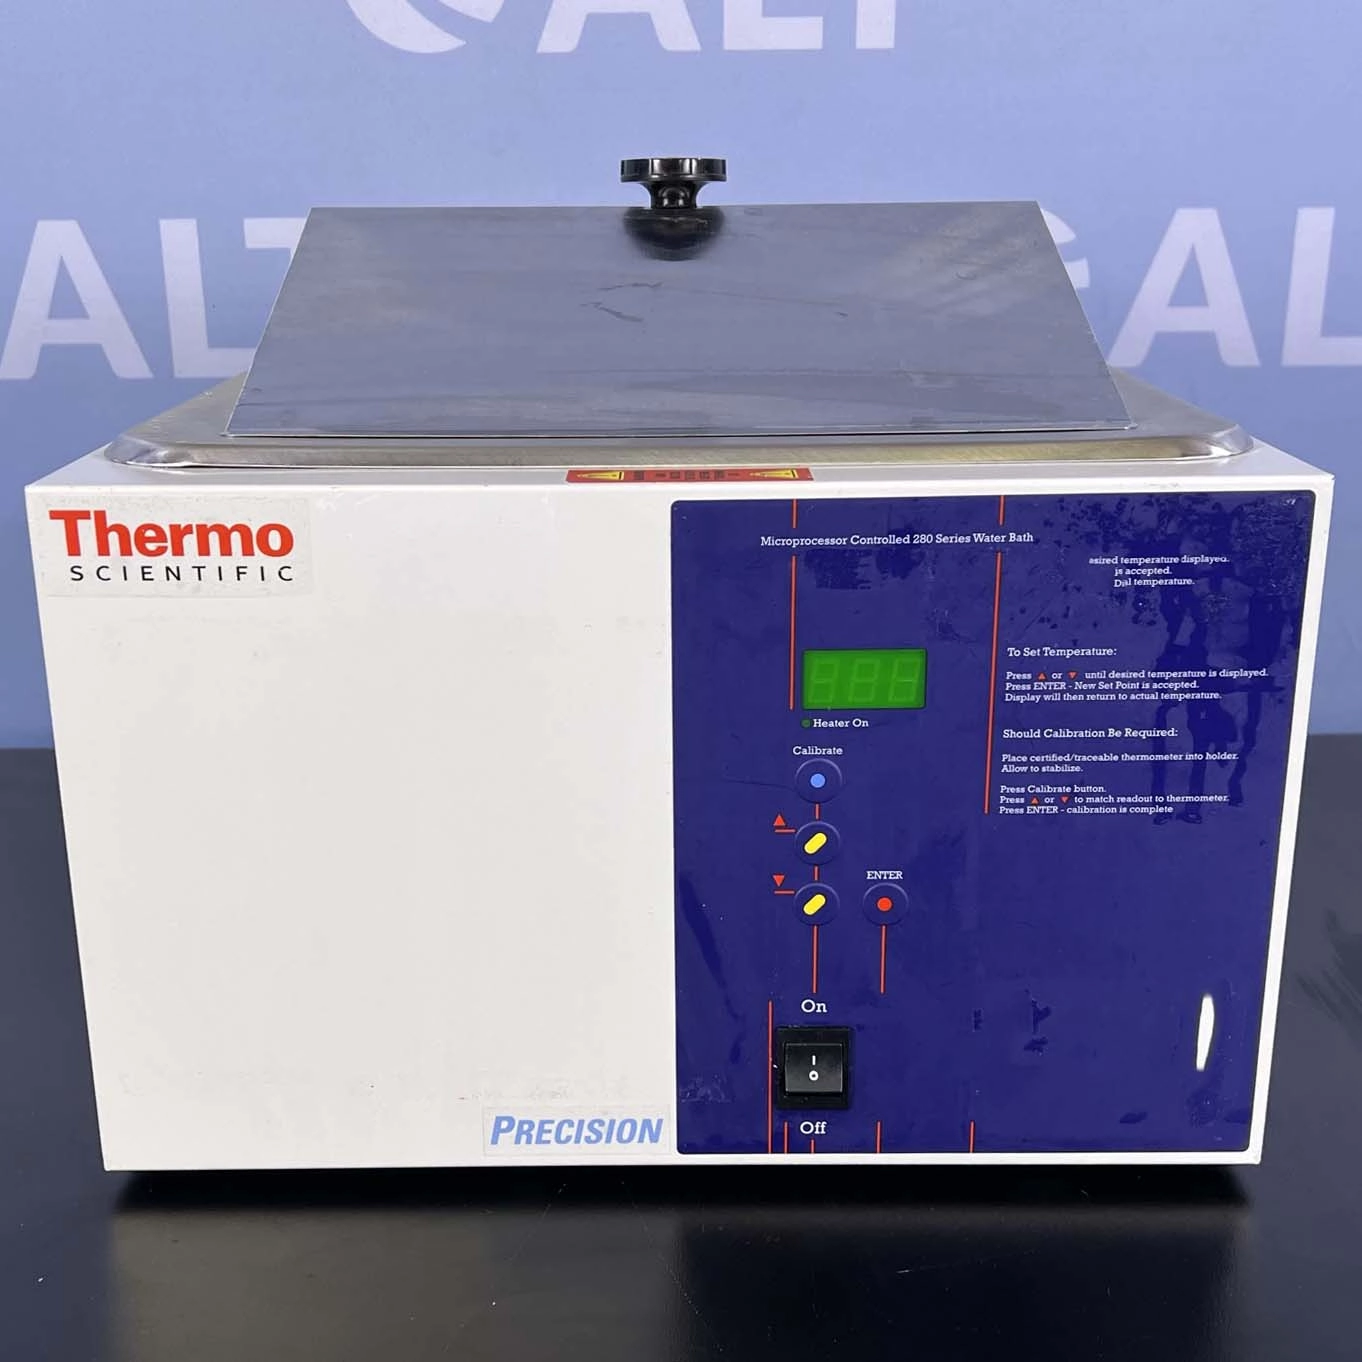 Thermo Scientific Precision Microprocessor Controlled 280 Series Water Bath, Model 2841